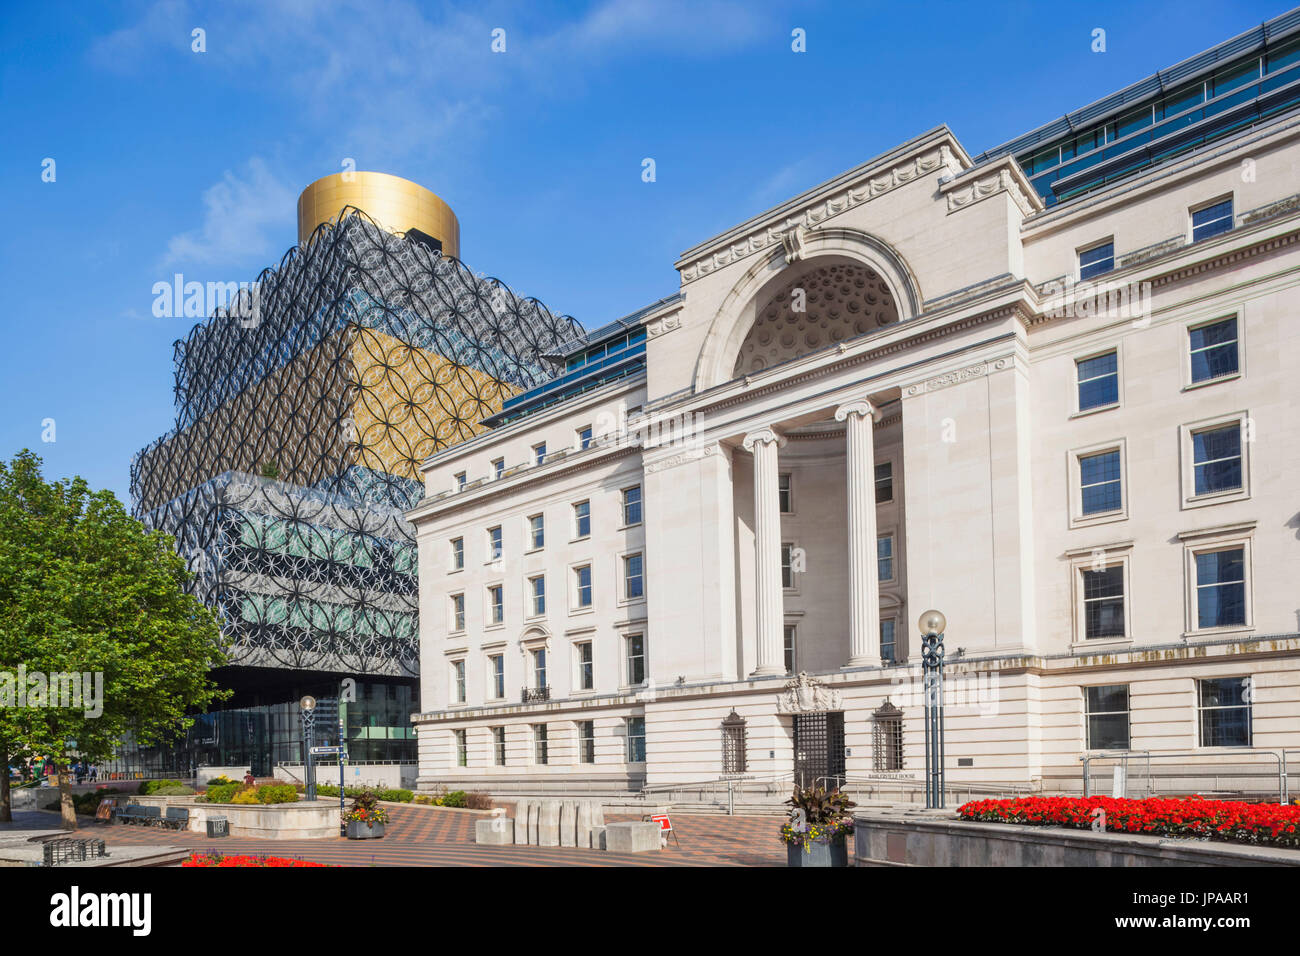 England, West Midlands, Birmingham, Centenary Square Stock Photo